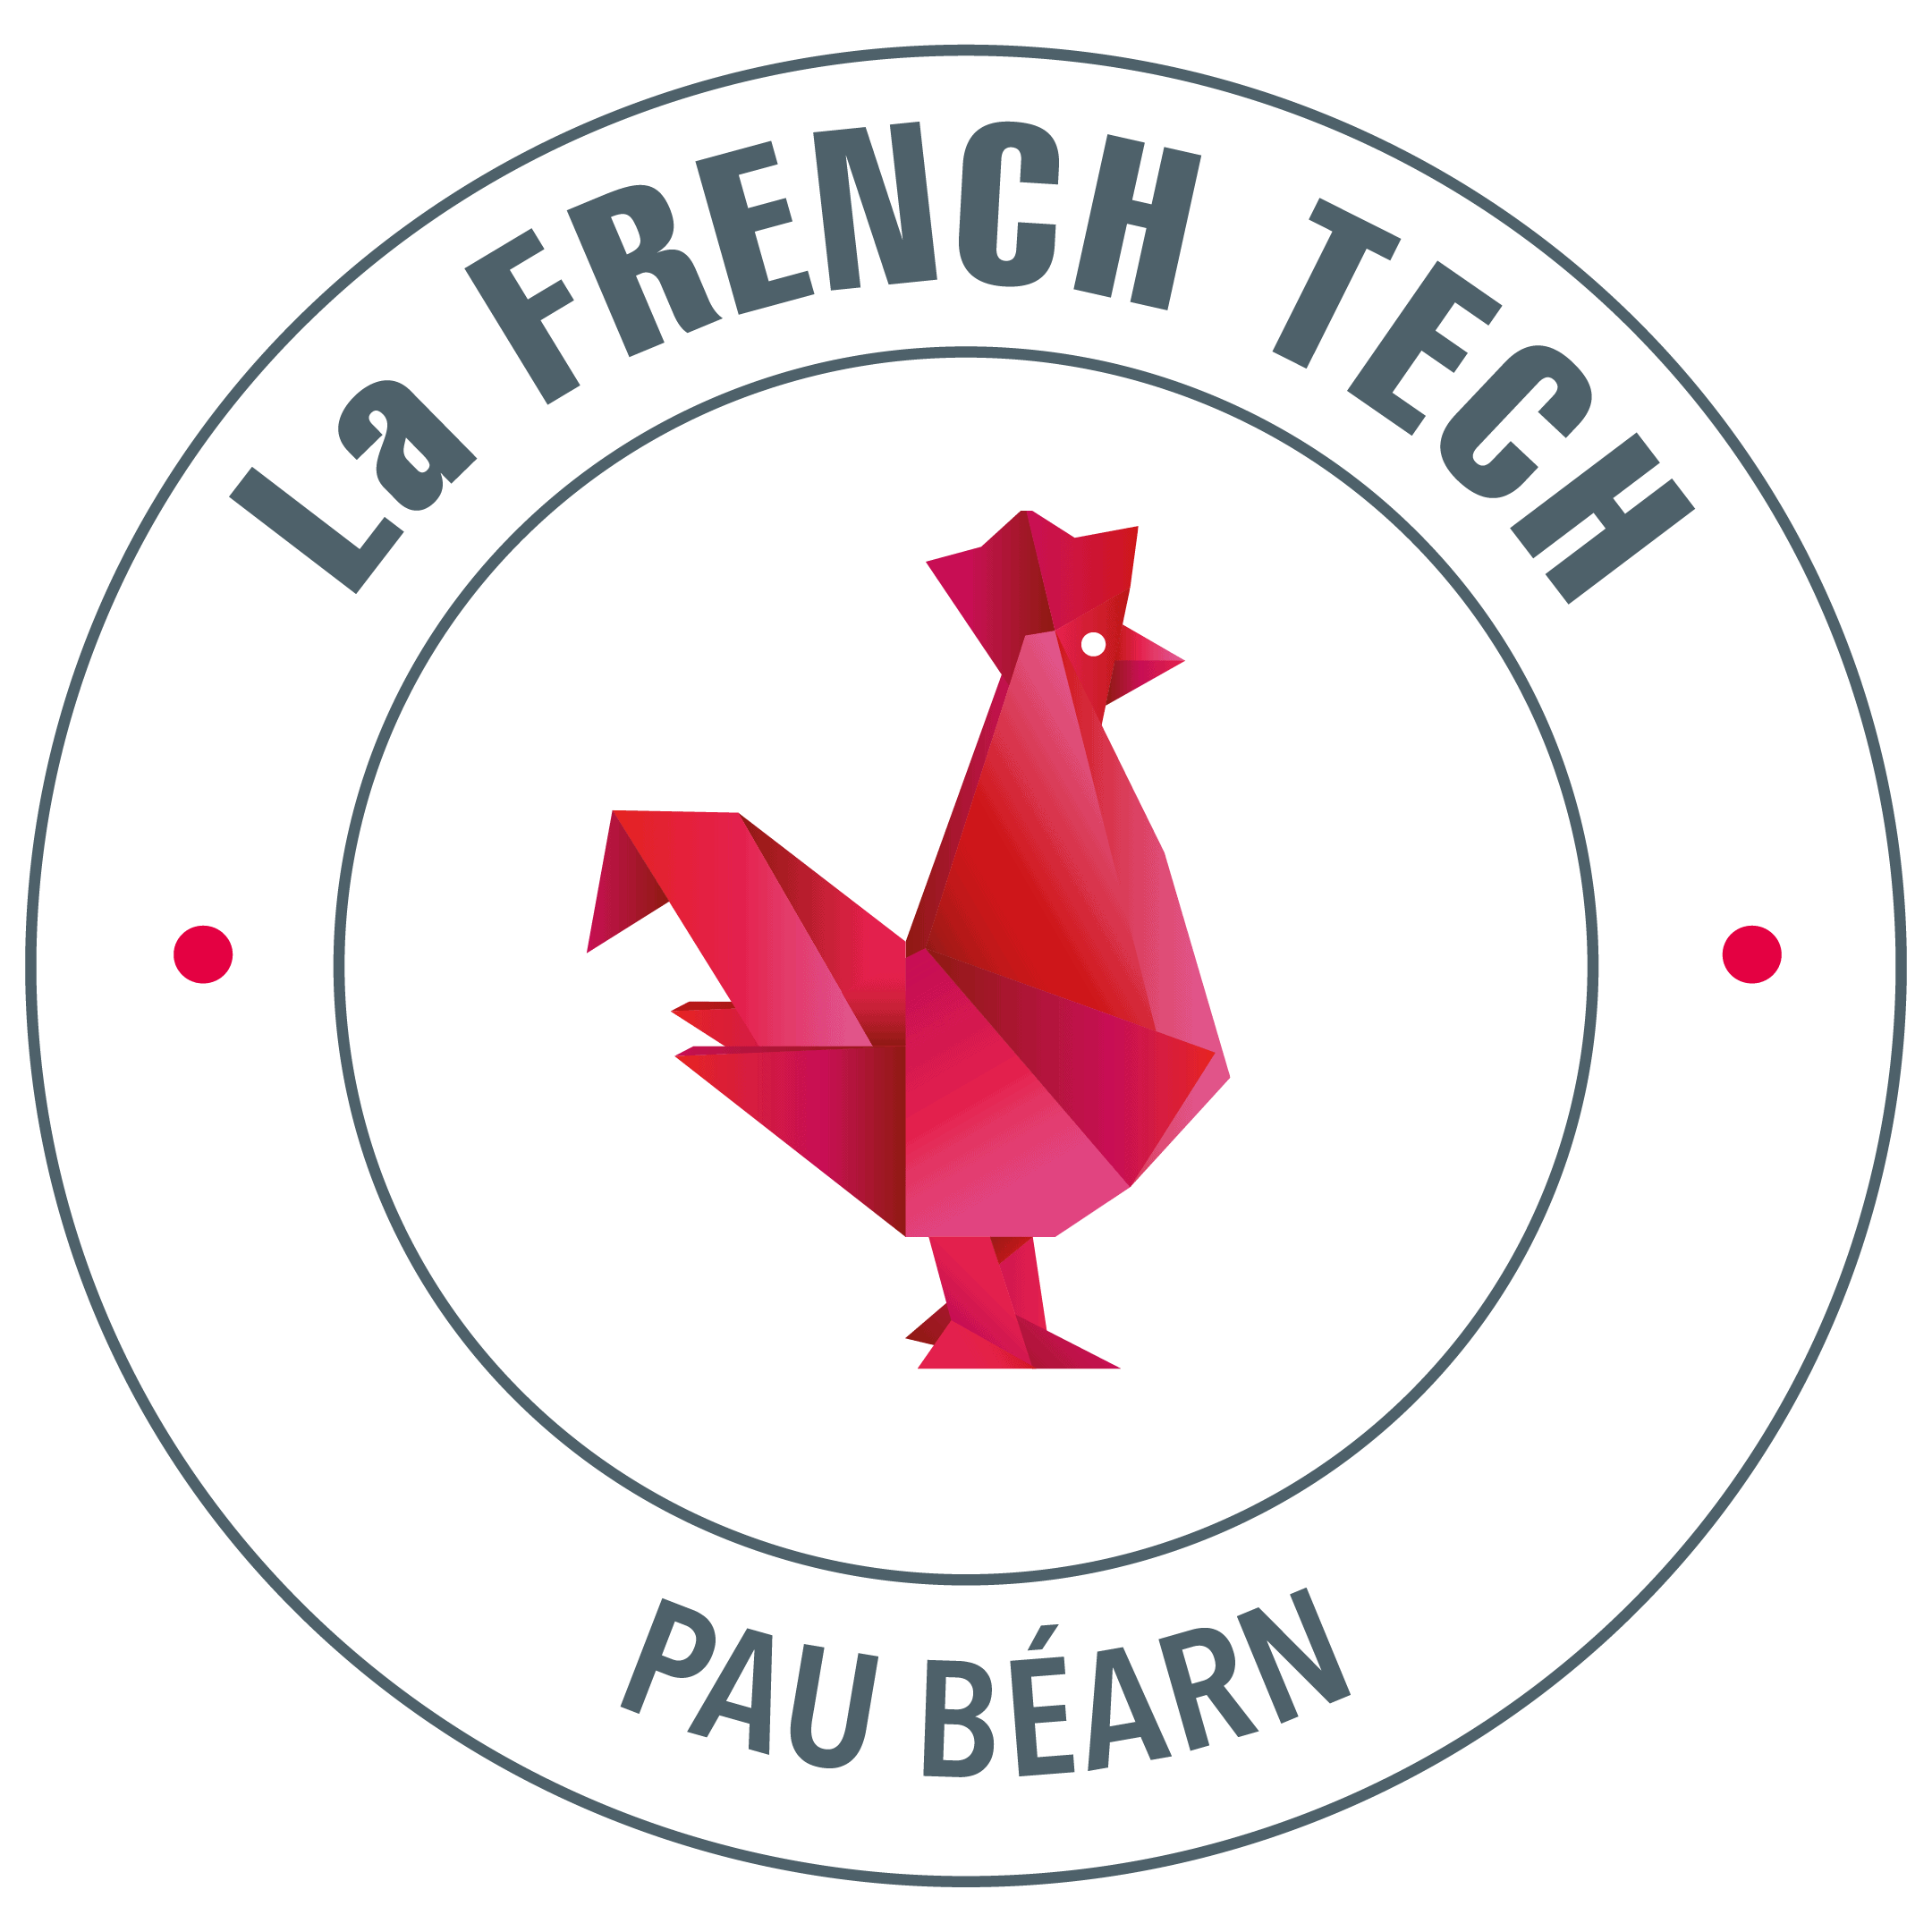 French Tech Pau Béarn